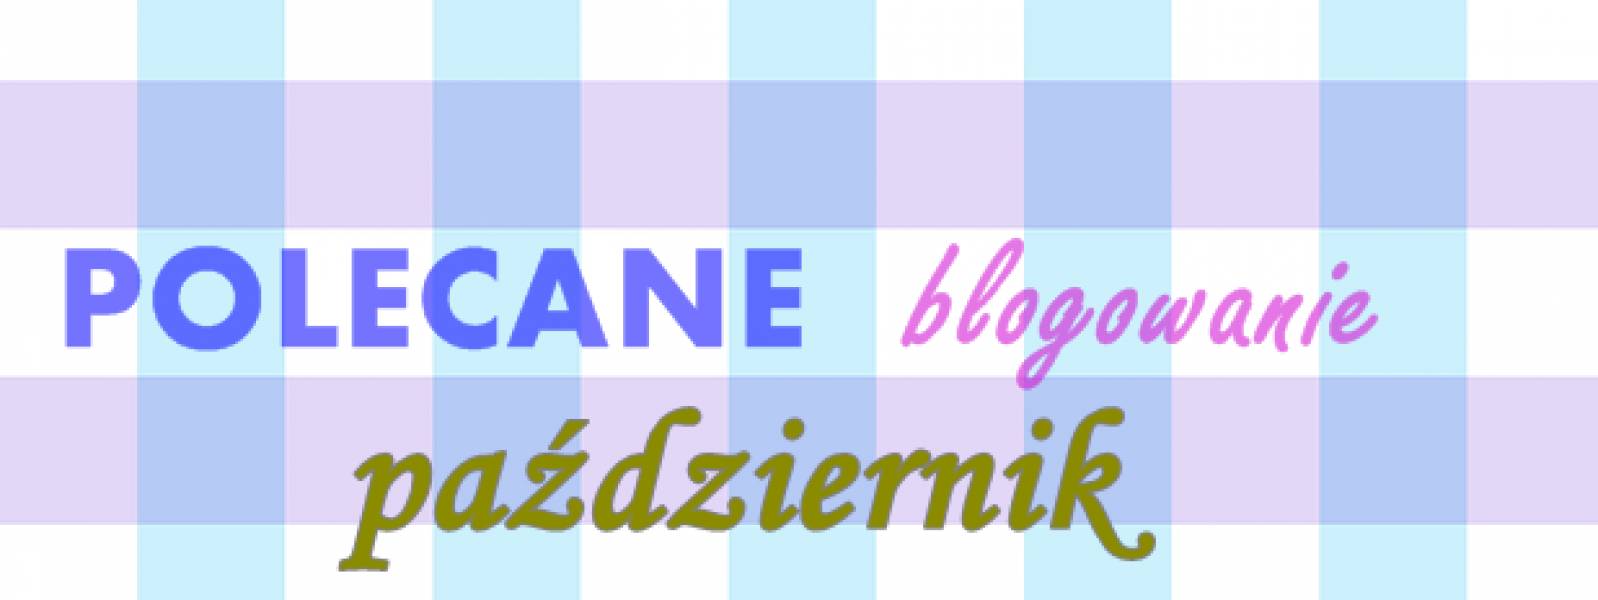 Polecane blogowanie - październik 2015